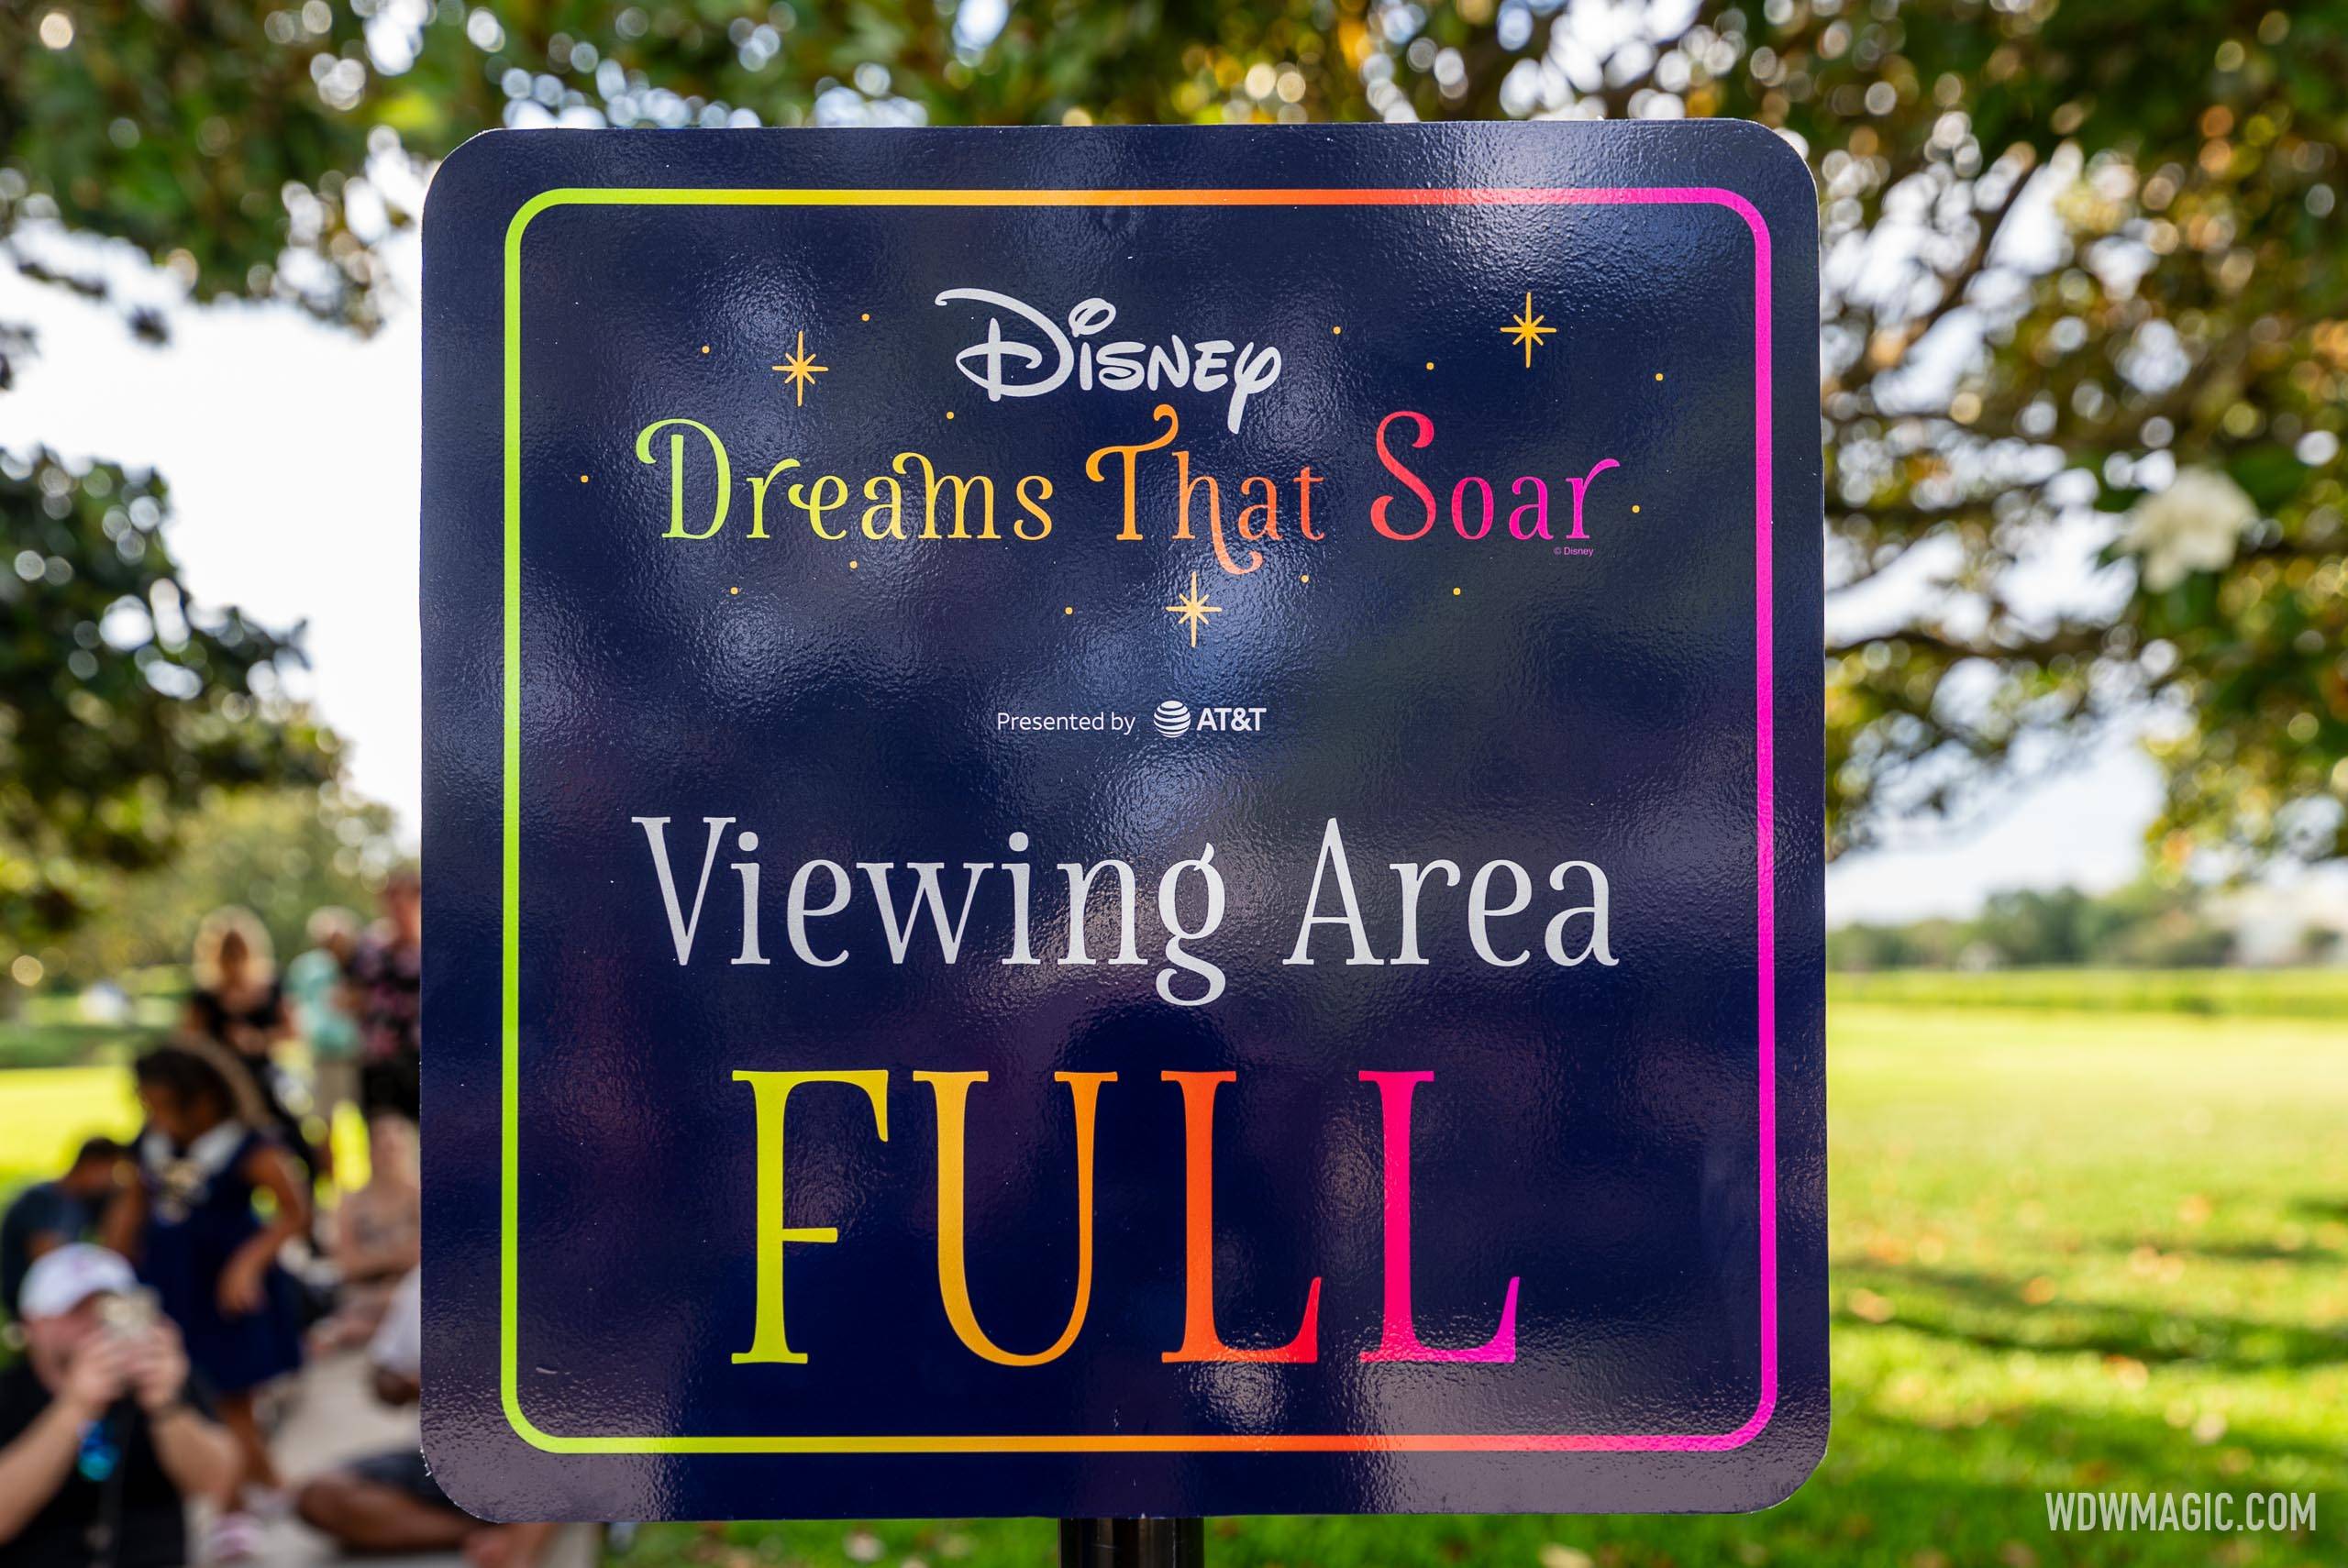 Disney Dreams That Soar viewing areas and queue